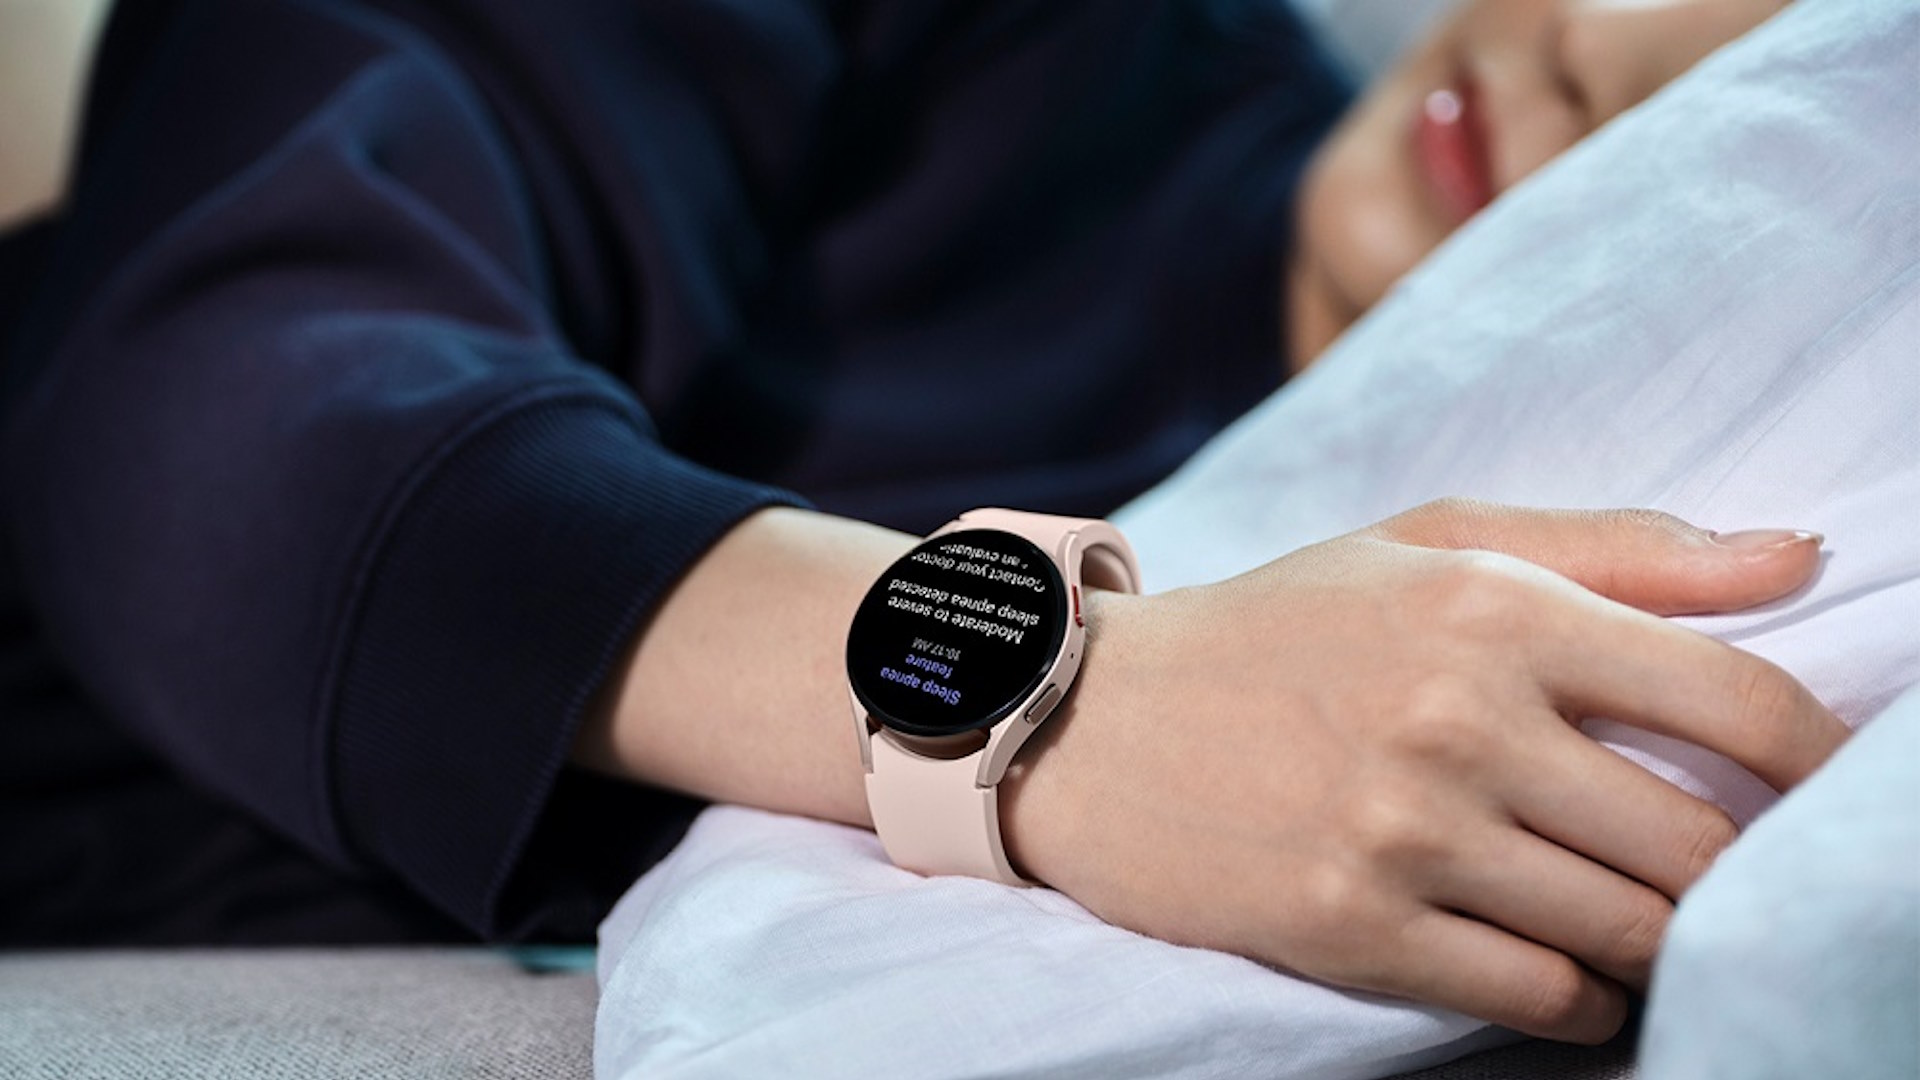 Samsung Galaxy watches get sleep apnea detection